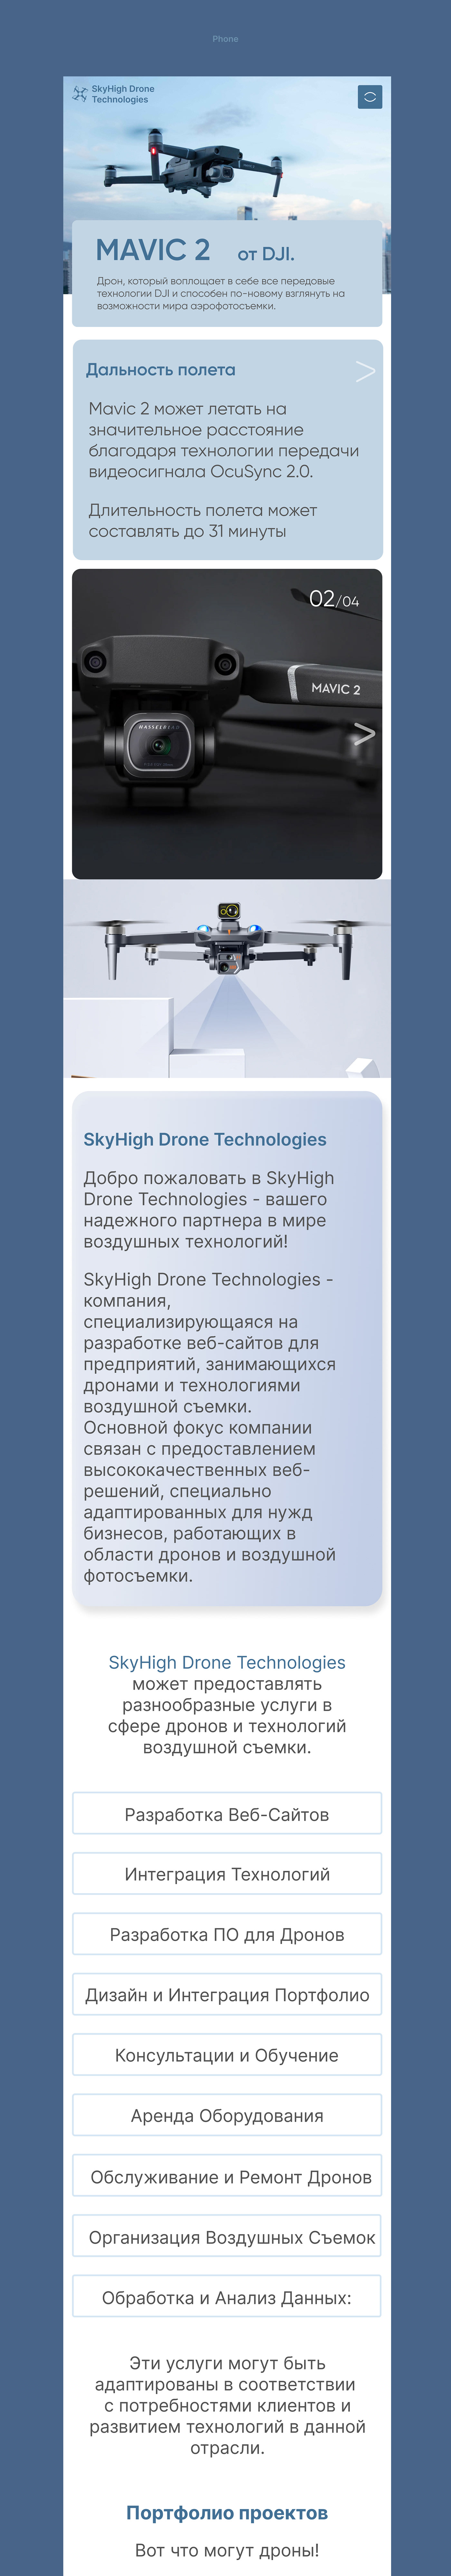 Website Web Design  UI/UX Figma ui design Web design Drone technology drone SKY